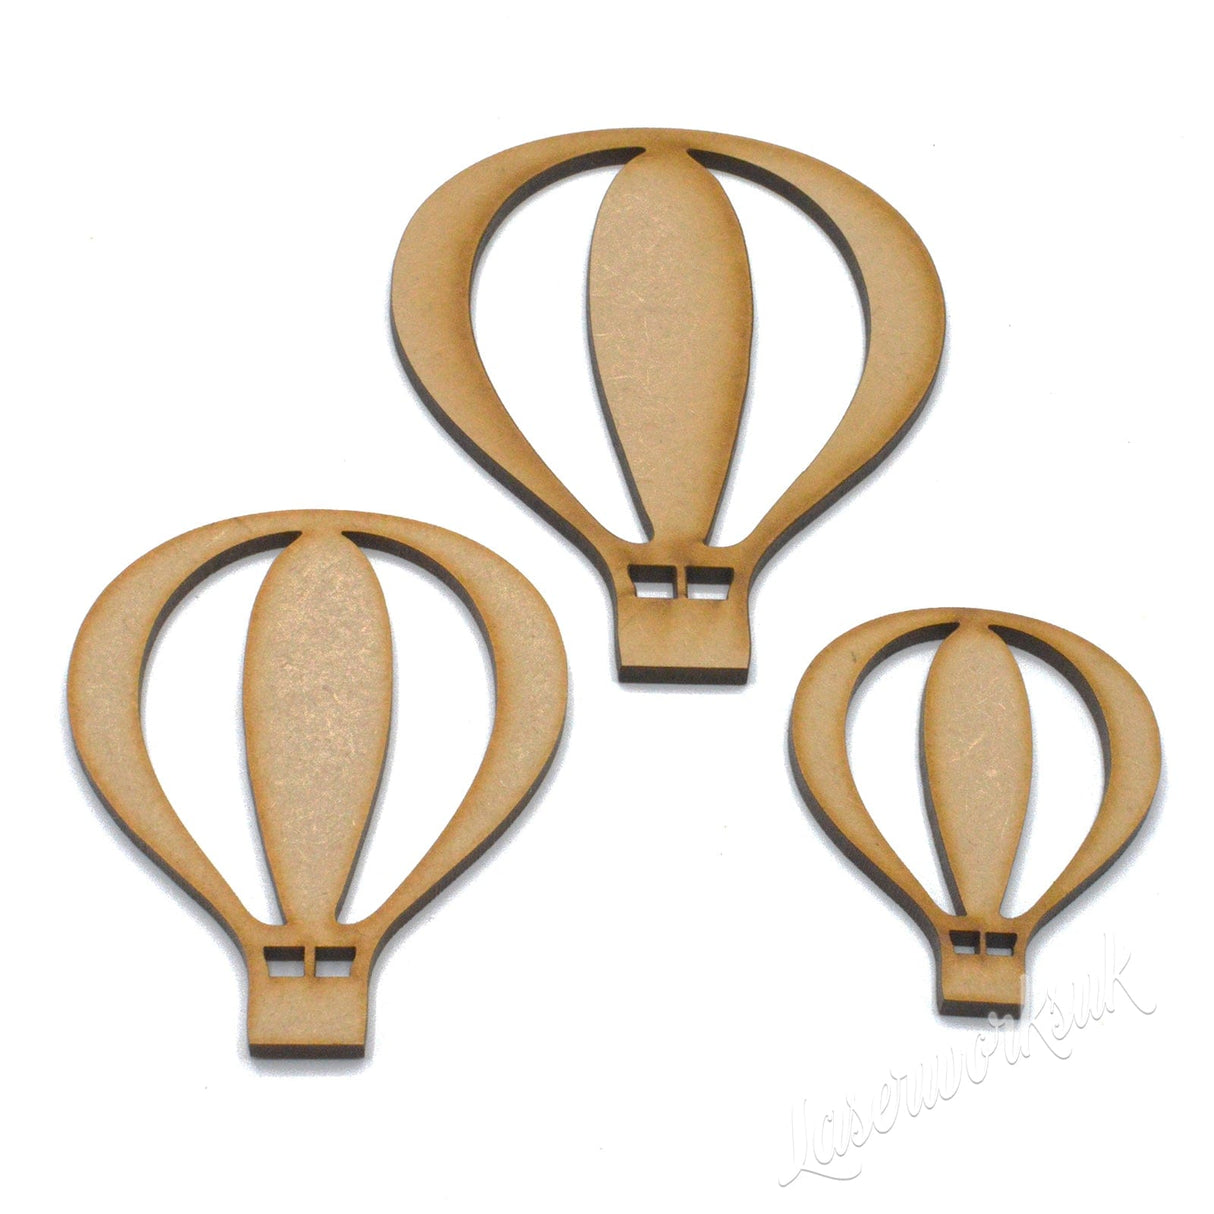 Hot Air Balloon - Wooden Craft Shapes - Laserworksuk